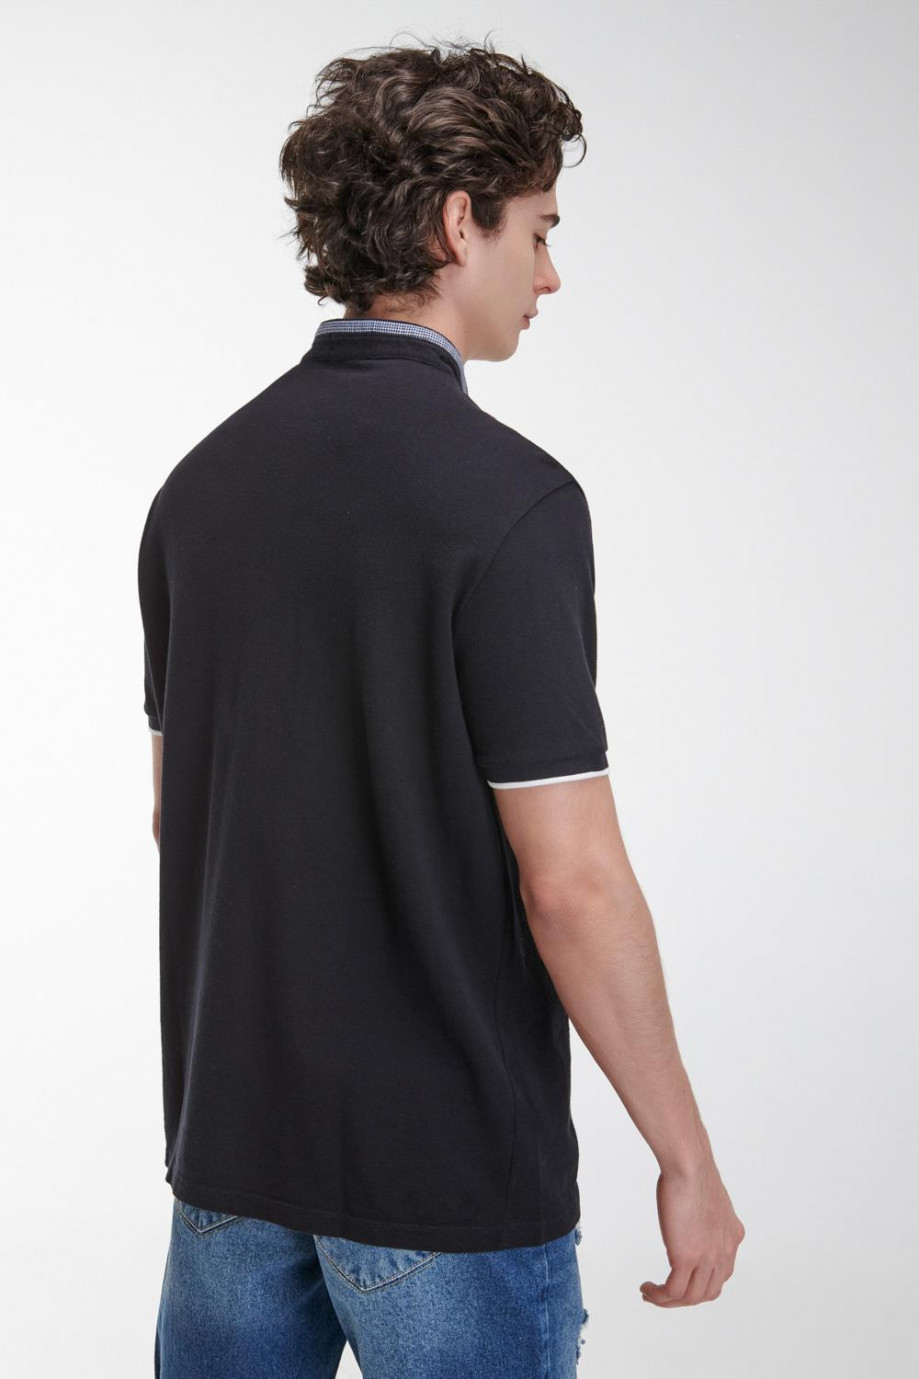 Camiseta Polo unicolor con cuello neru y puños tejidos